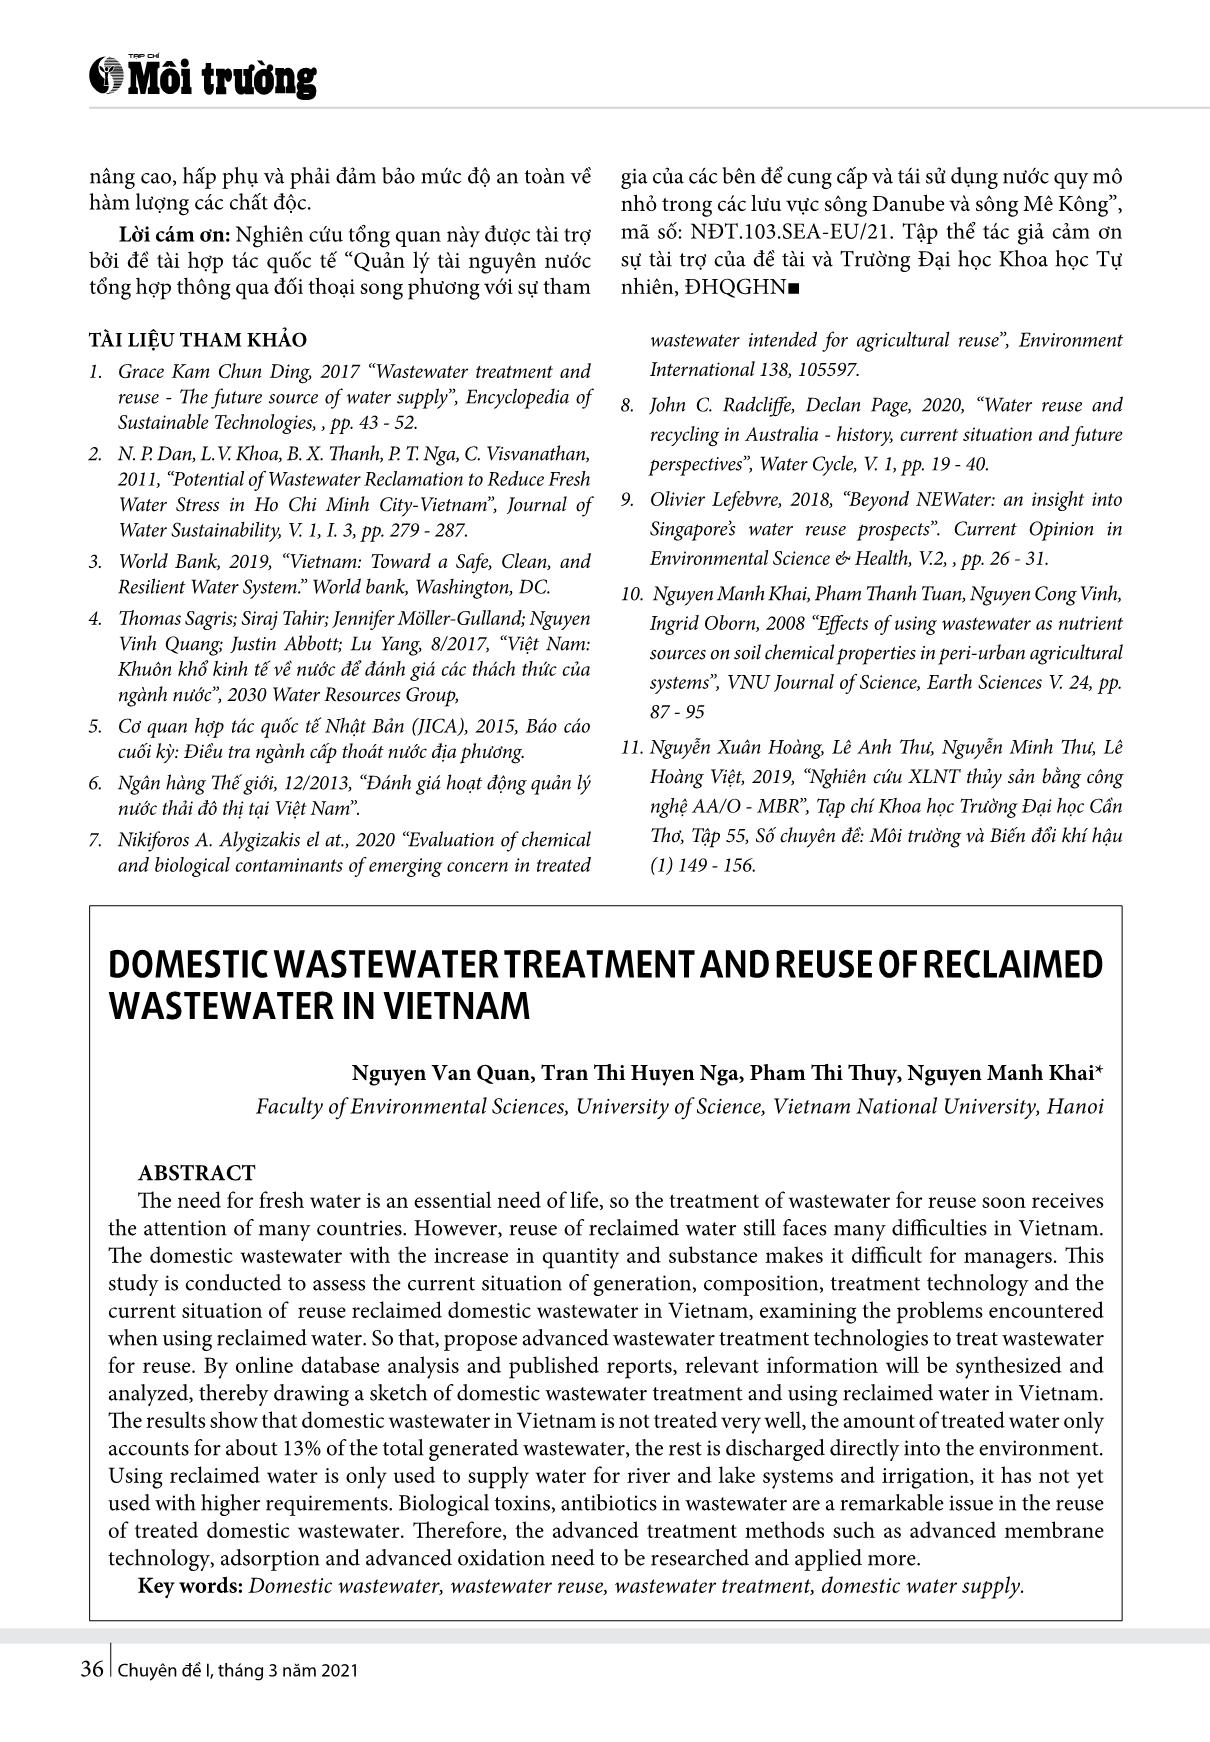 Xử lý nước thải sinh hoạt và tái sử dụng nước thải sau xử lý tại Việt Nam trang 6